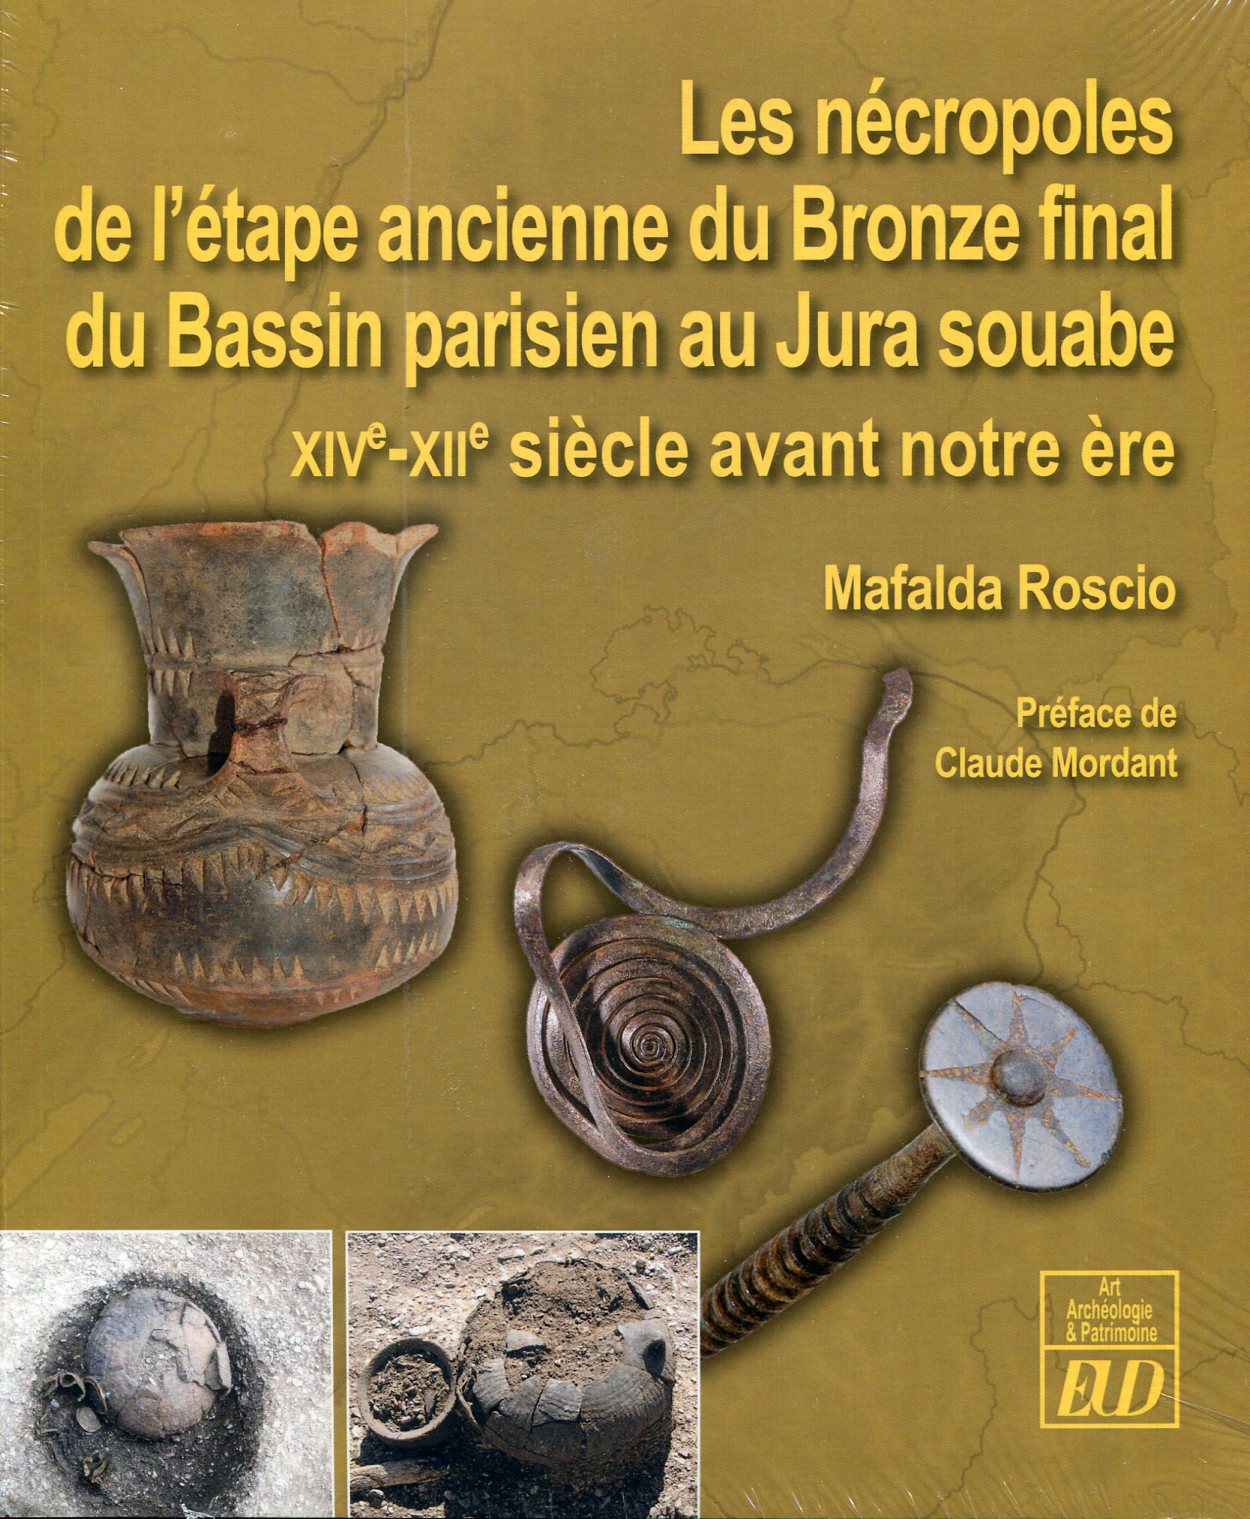 Les nécropoles de l'étape ancienne du Bronze final du Bassin parisien au Jura souabe, XIVe-XIIe siècles avant notre ère, 2018, 780 p.